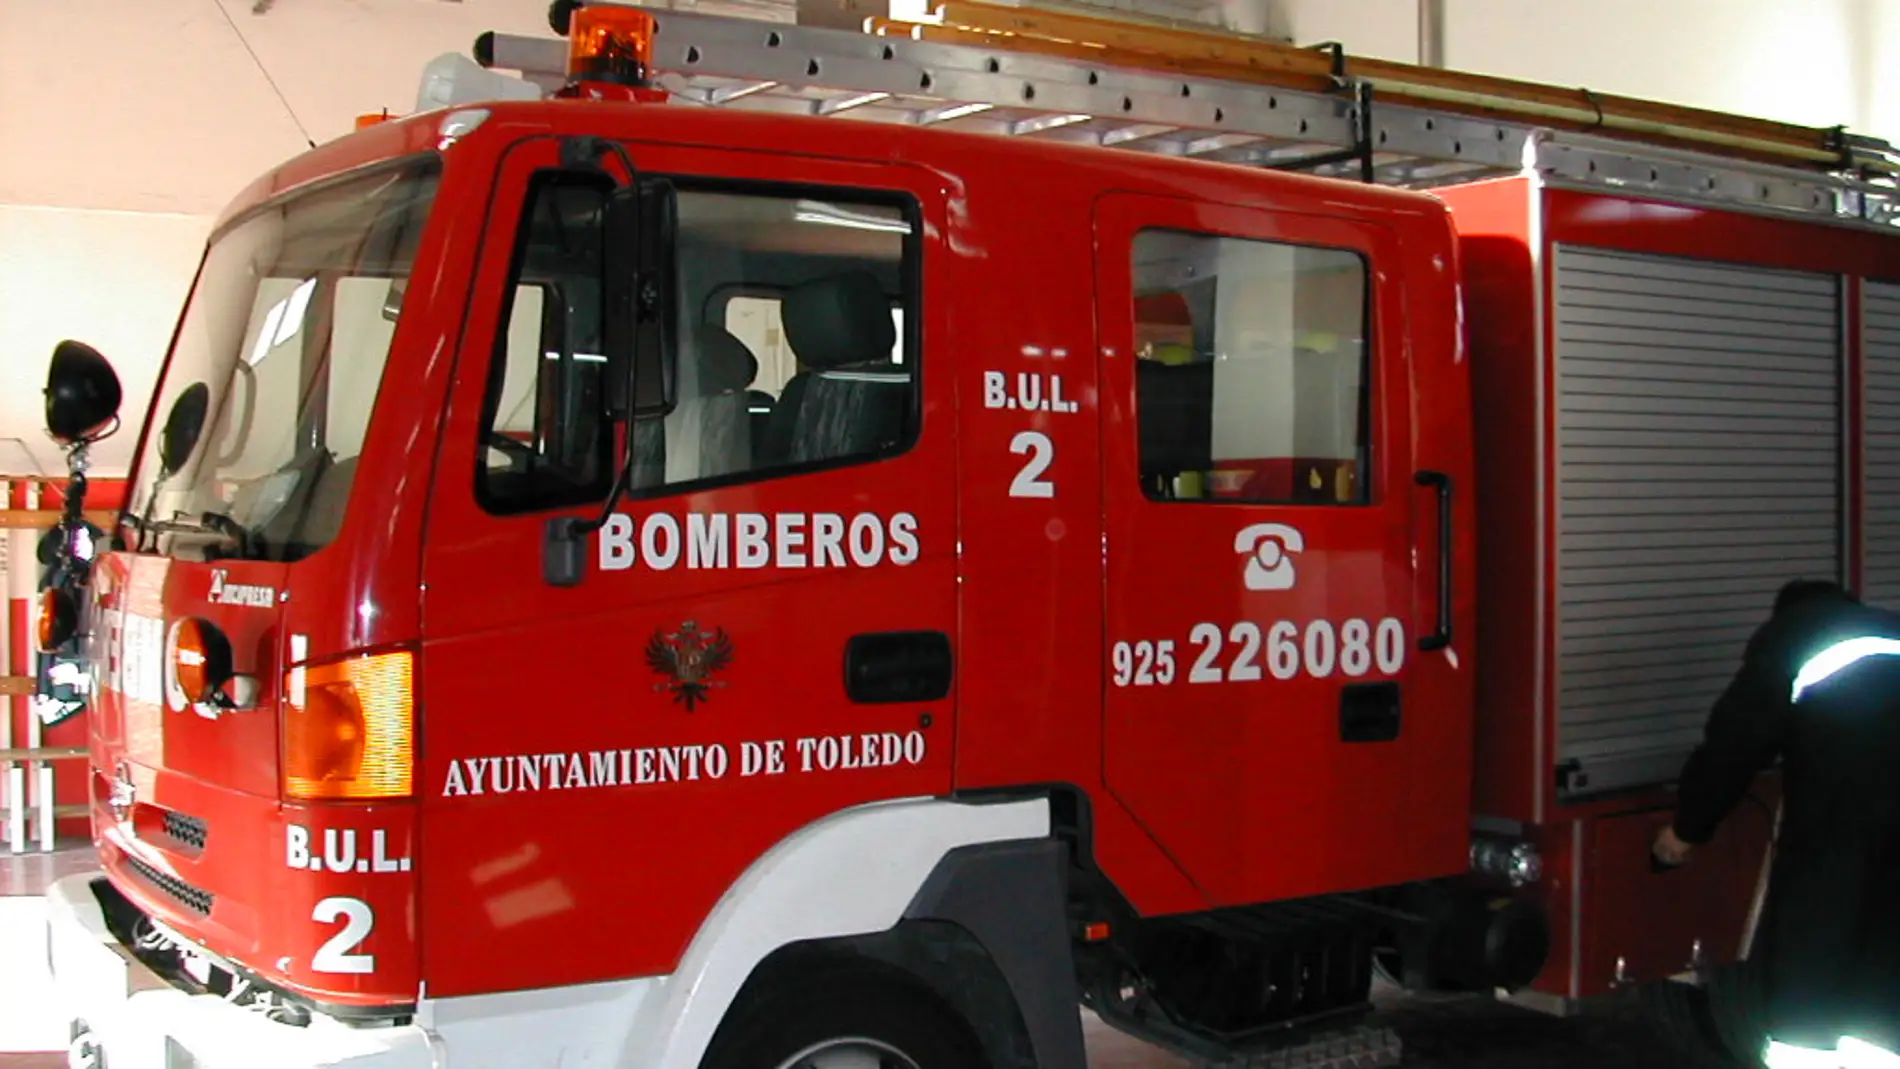 El Ayuntamiento de Toledo y los bomberos llegan a un acuerdo para la categoría C1